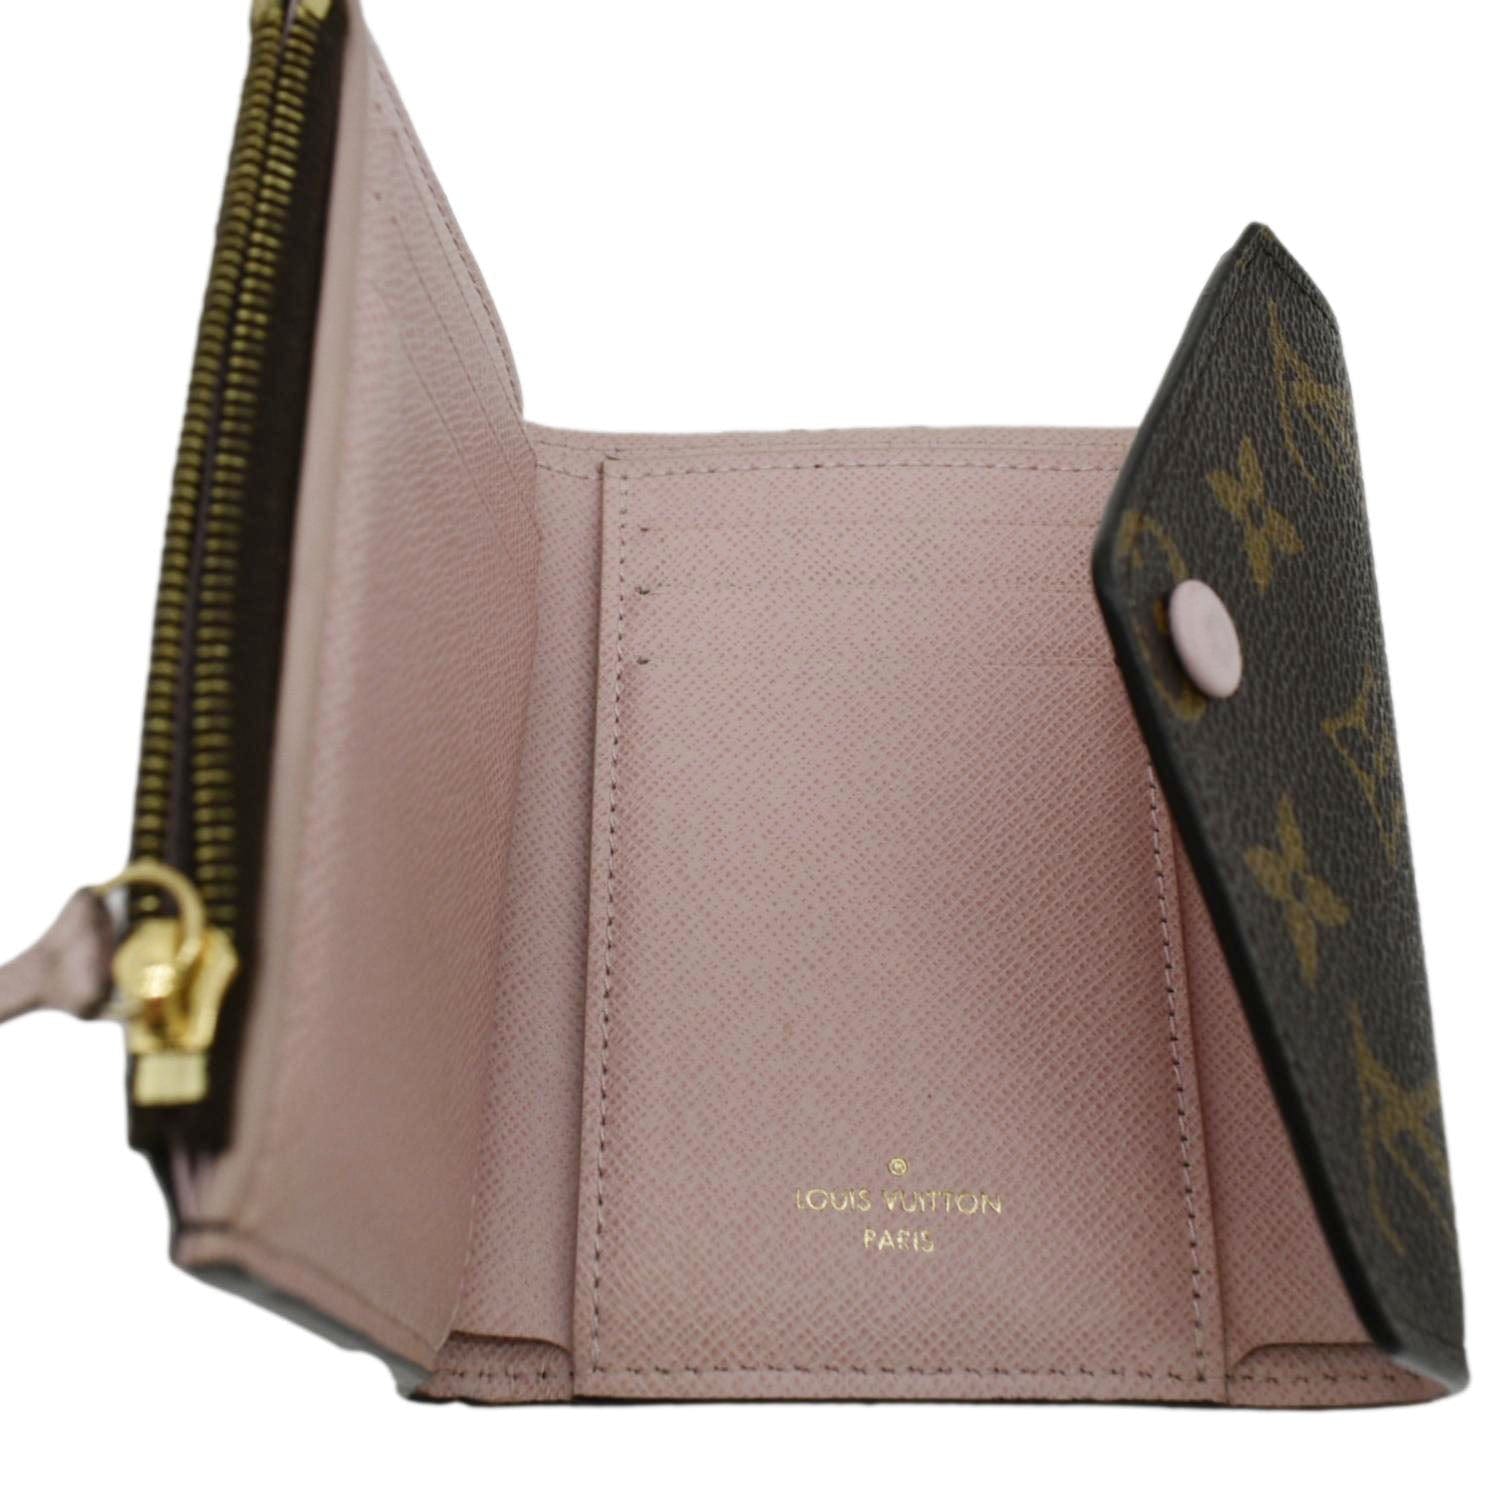 Victorine cloth wallet